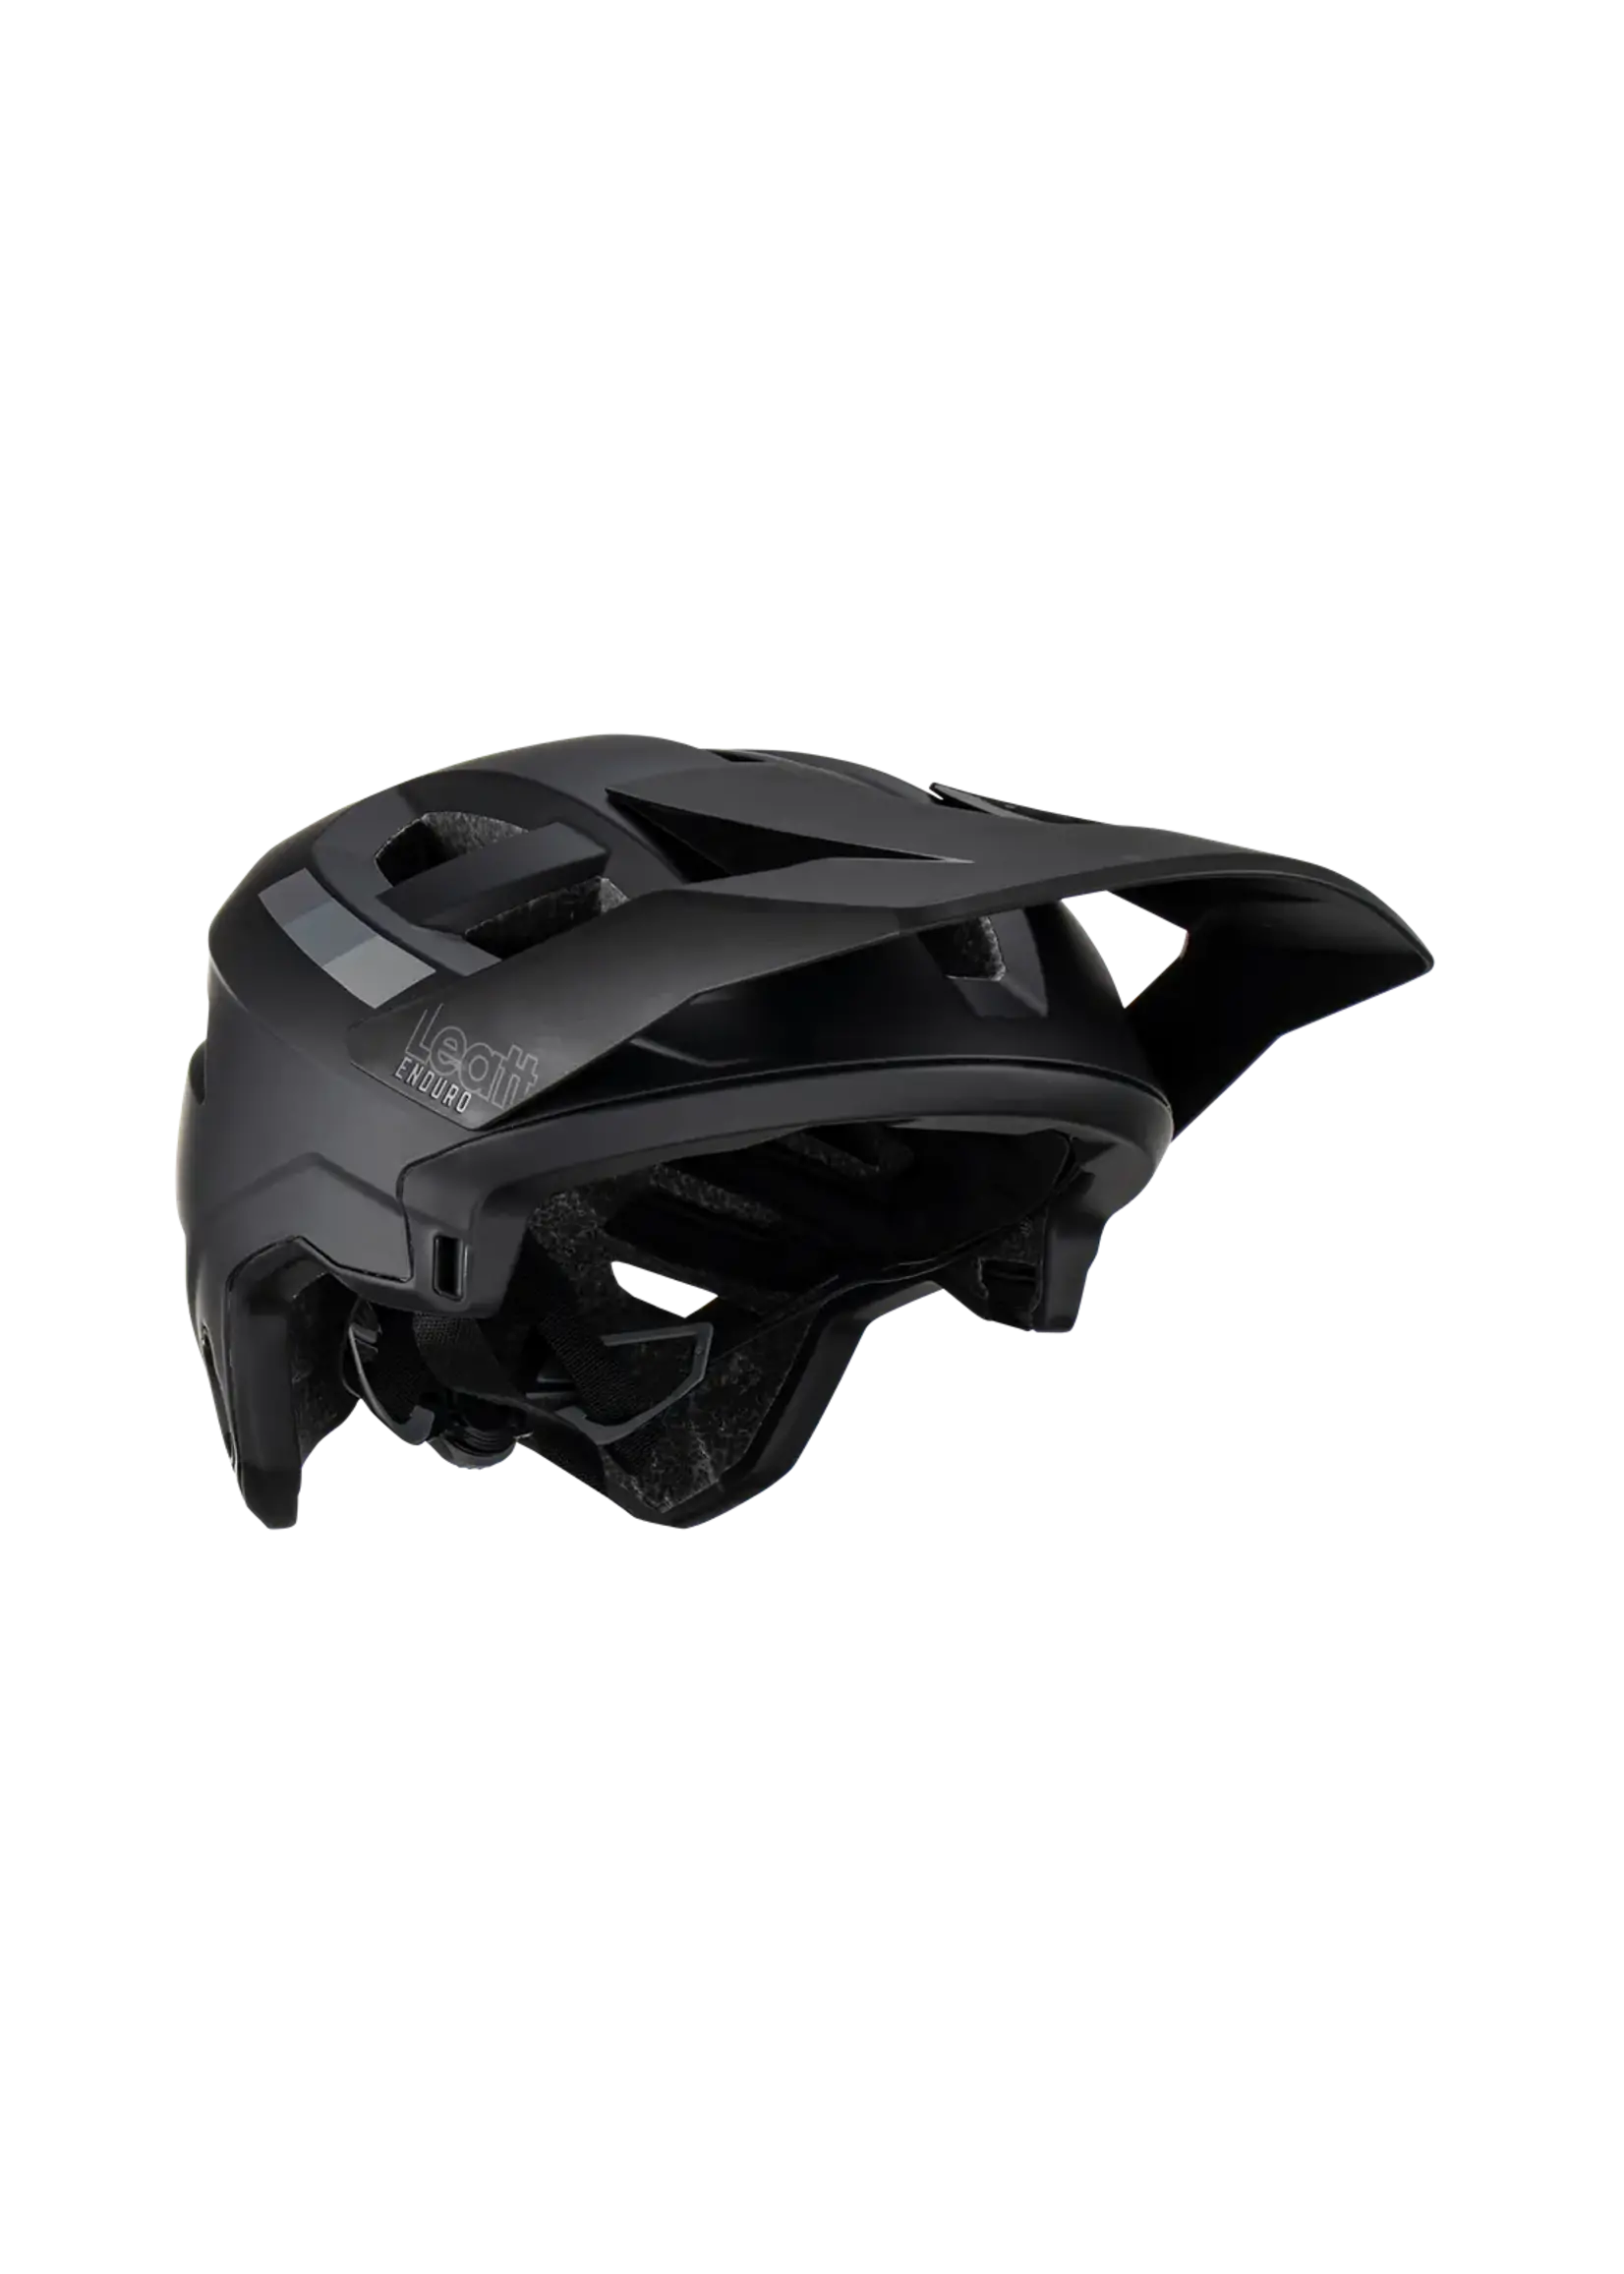 LEATT Helmet MTB  2.0 Enduro